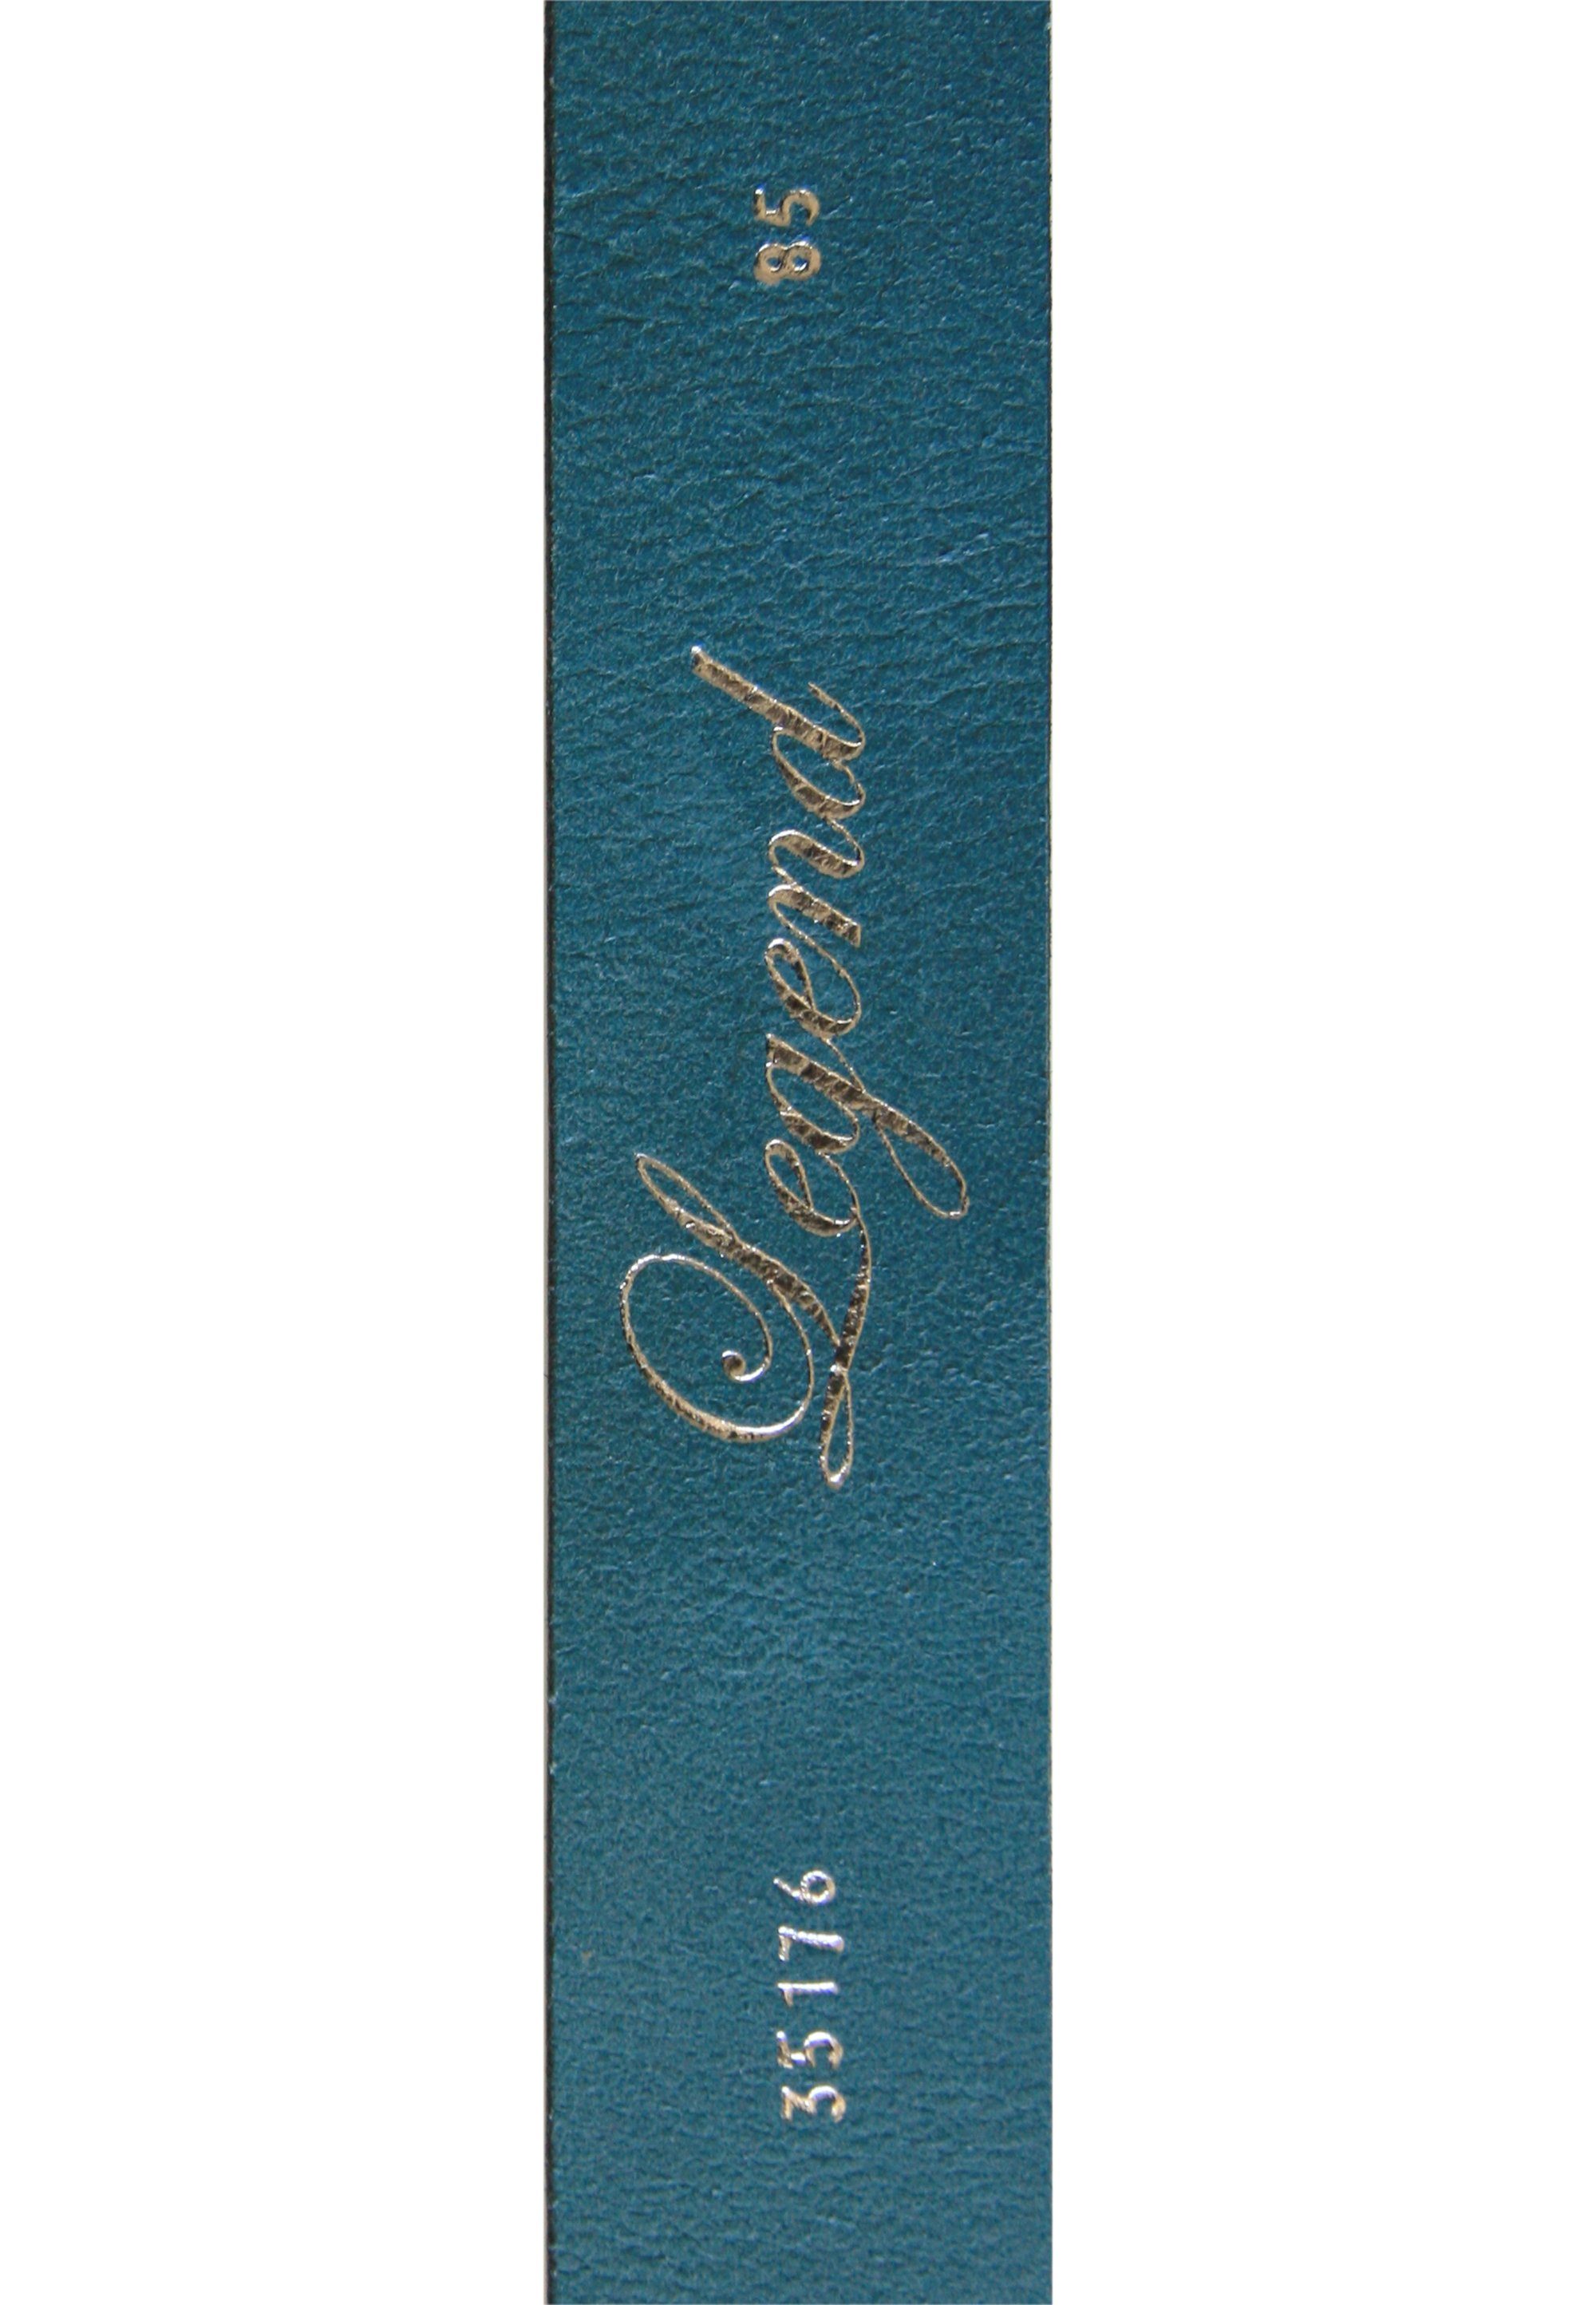 blau Ledergürtel schlichter mit Legend Rechteck-Schließe